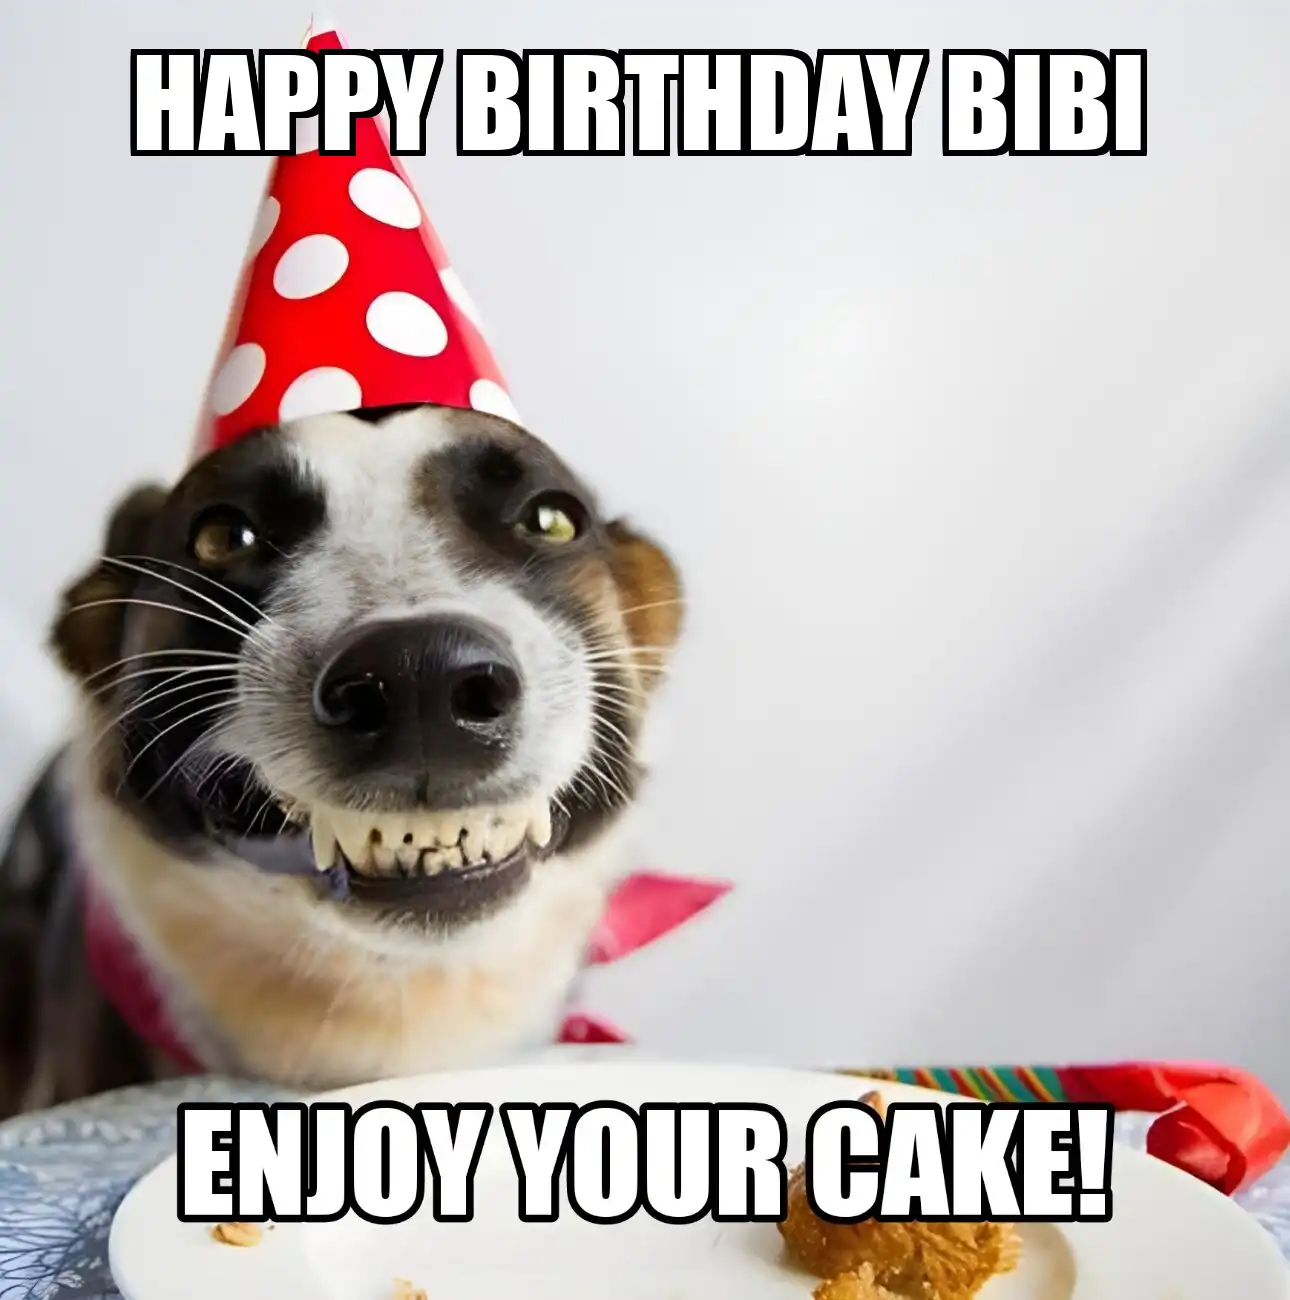 Happy Birthday Bibi Enjoy Your Cake Dog Meme